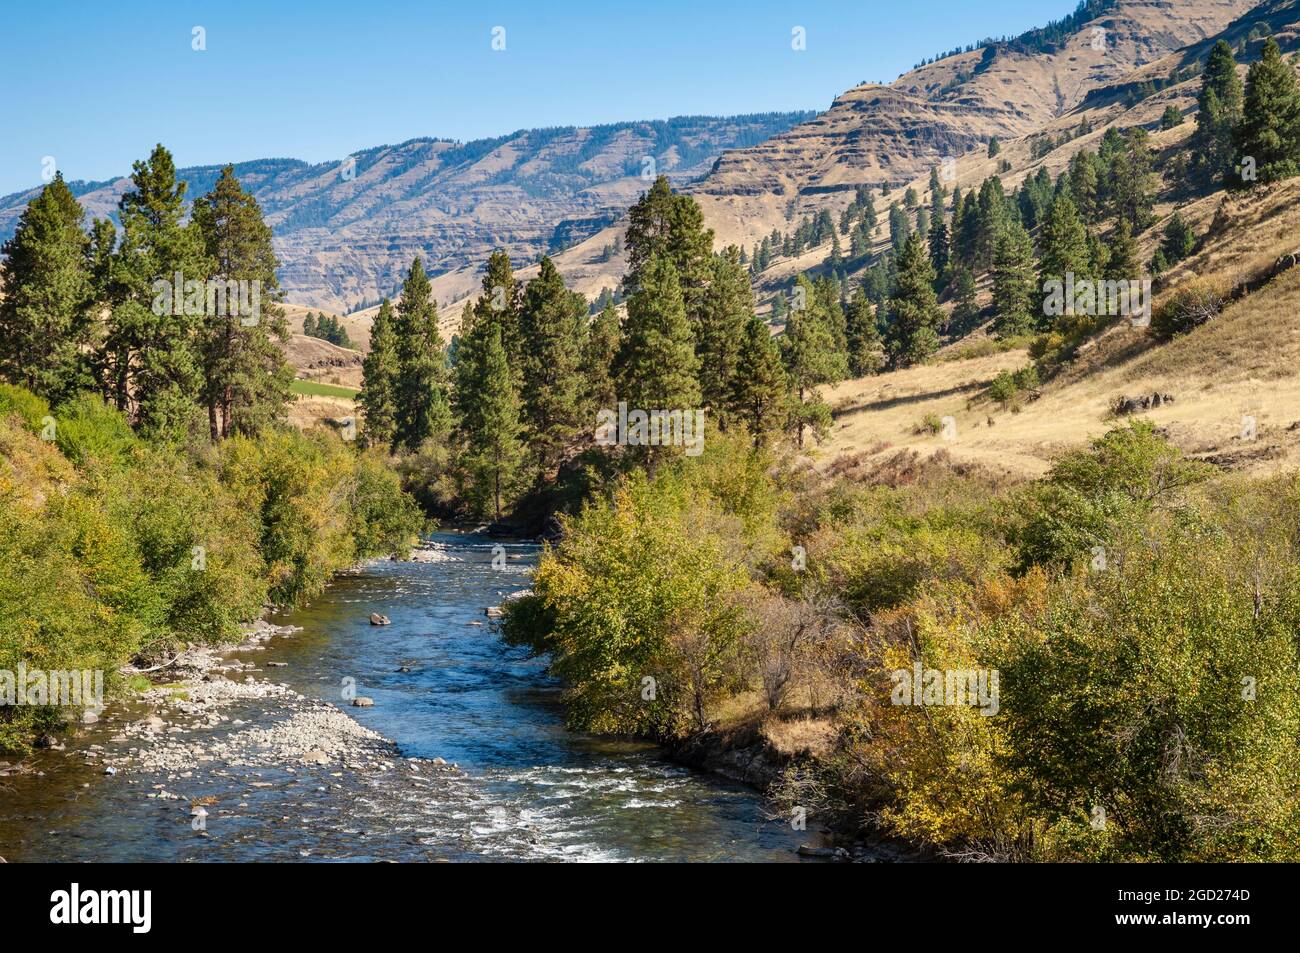 La rivière Wild et Scenic Imnaha, un affluent de la rivière Snake, dans le nord-est de l'Oregon. Banque D'Images